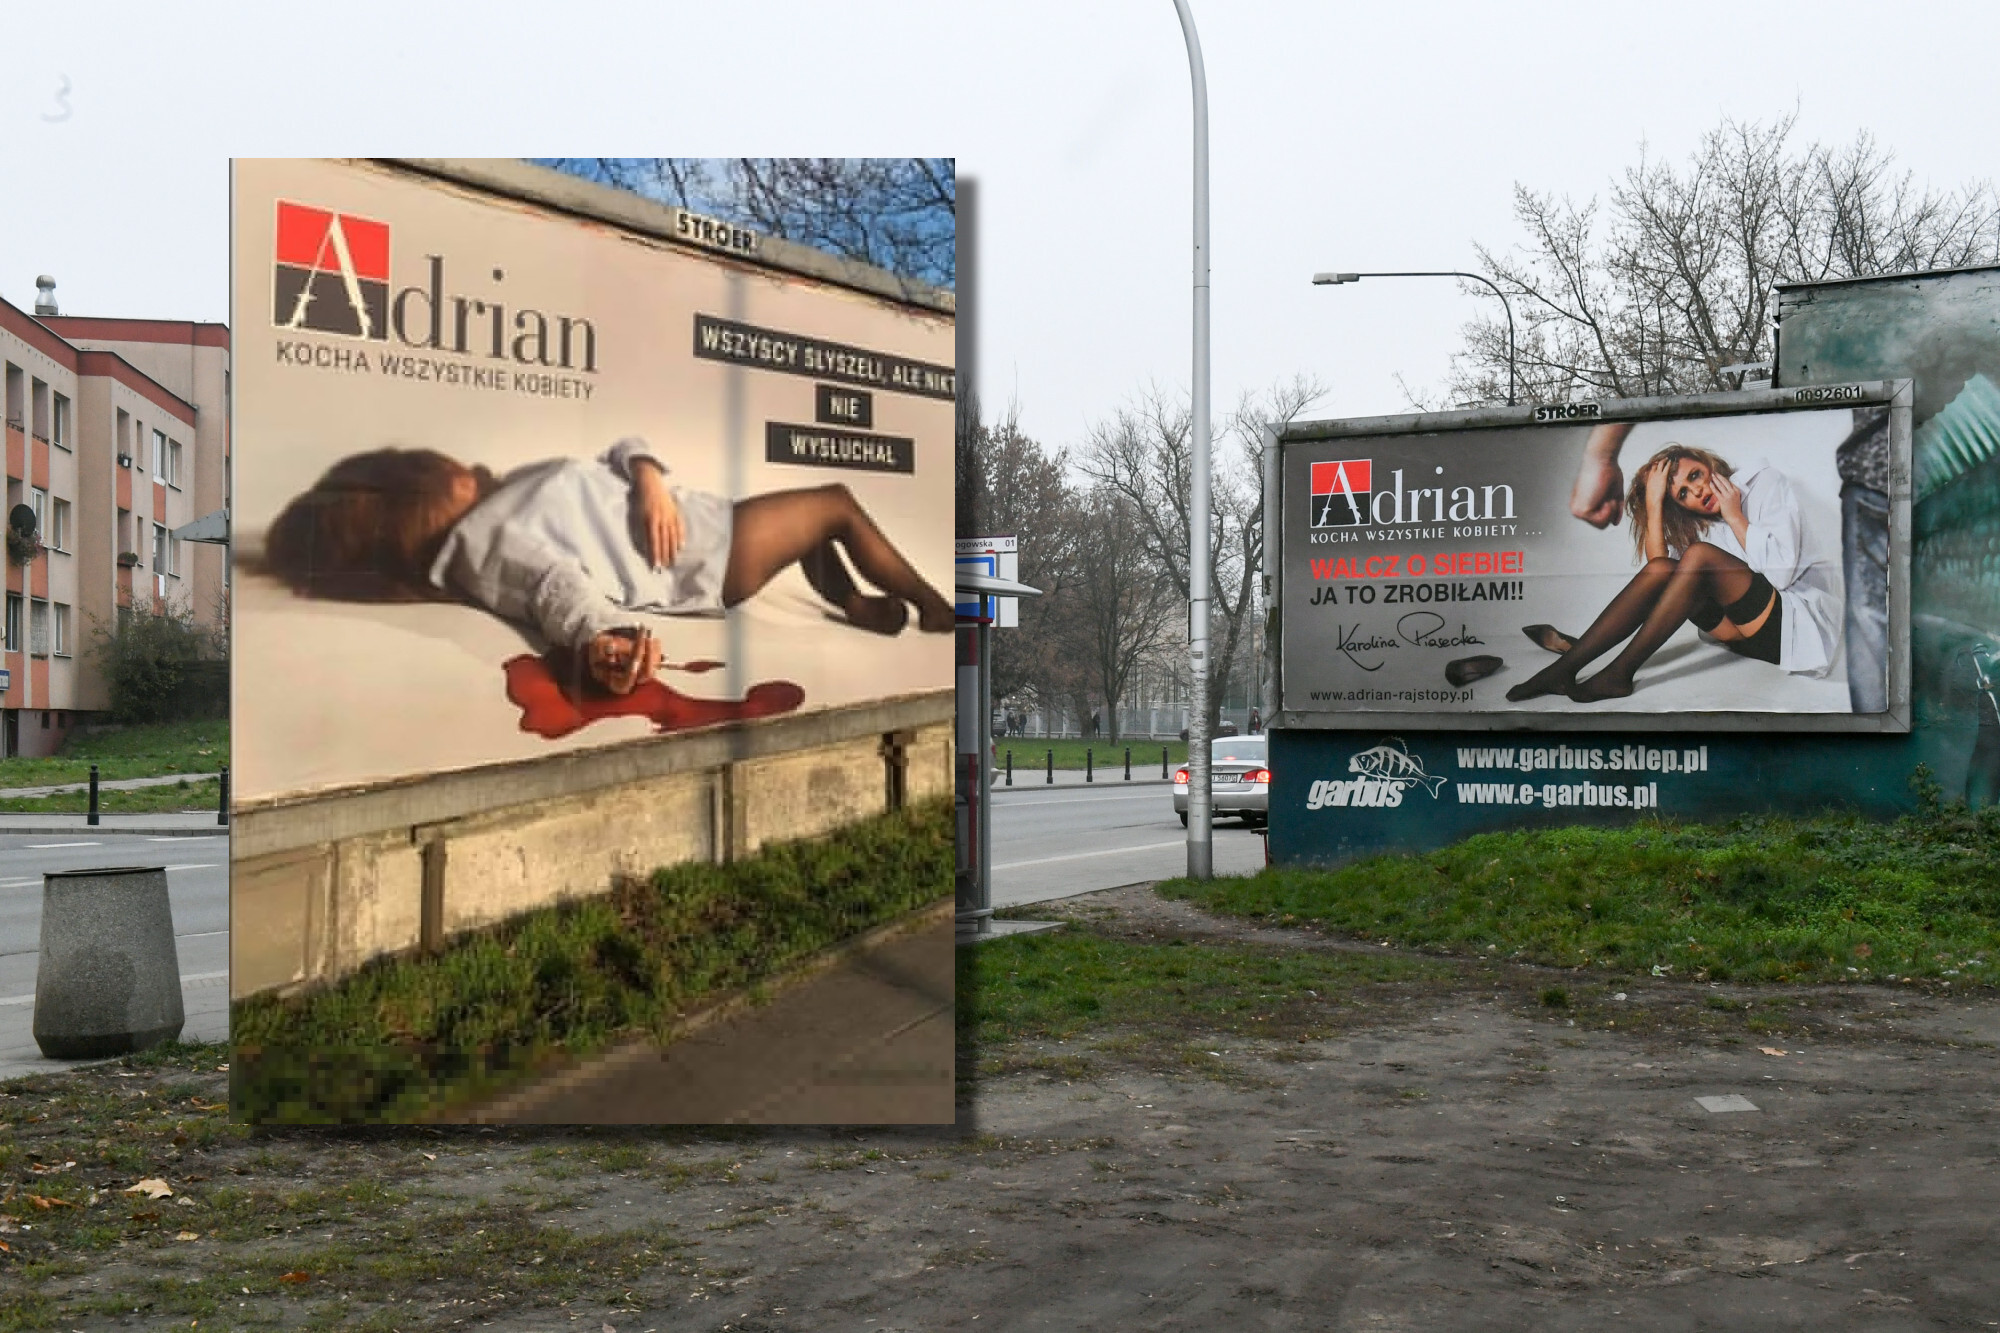 Szokująca reklama rajstop marki Adrian z kobieta, którą upozowano na martwą  | Ofeminin